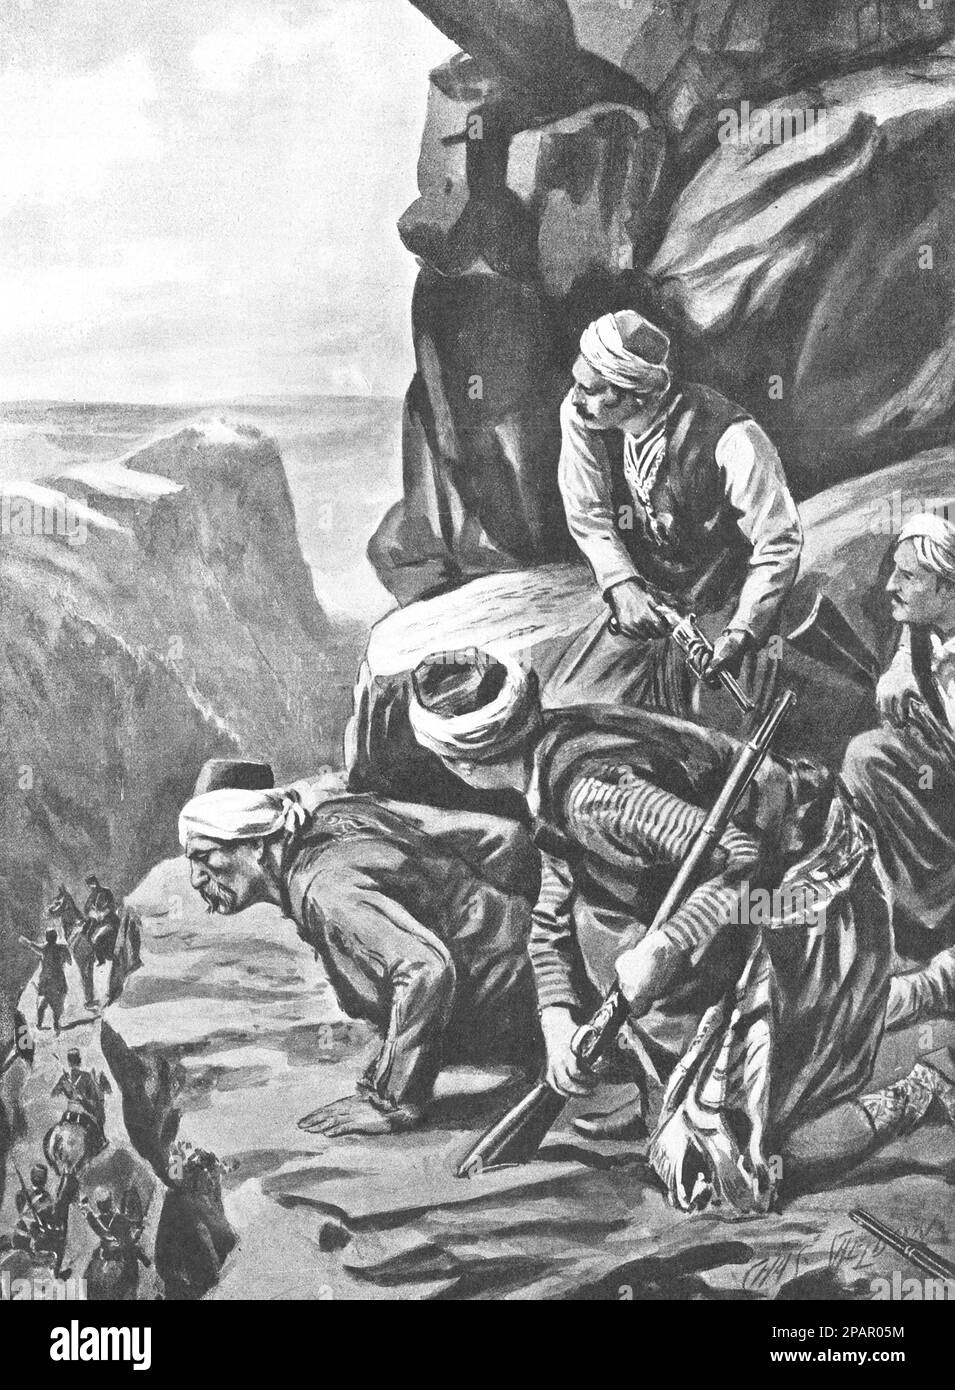 Arnaut si ribella in agguato. Rivolta in Albania nel 1910. Disegno di C. Sheldon, 1910. Foto Stock